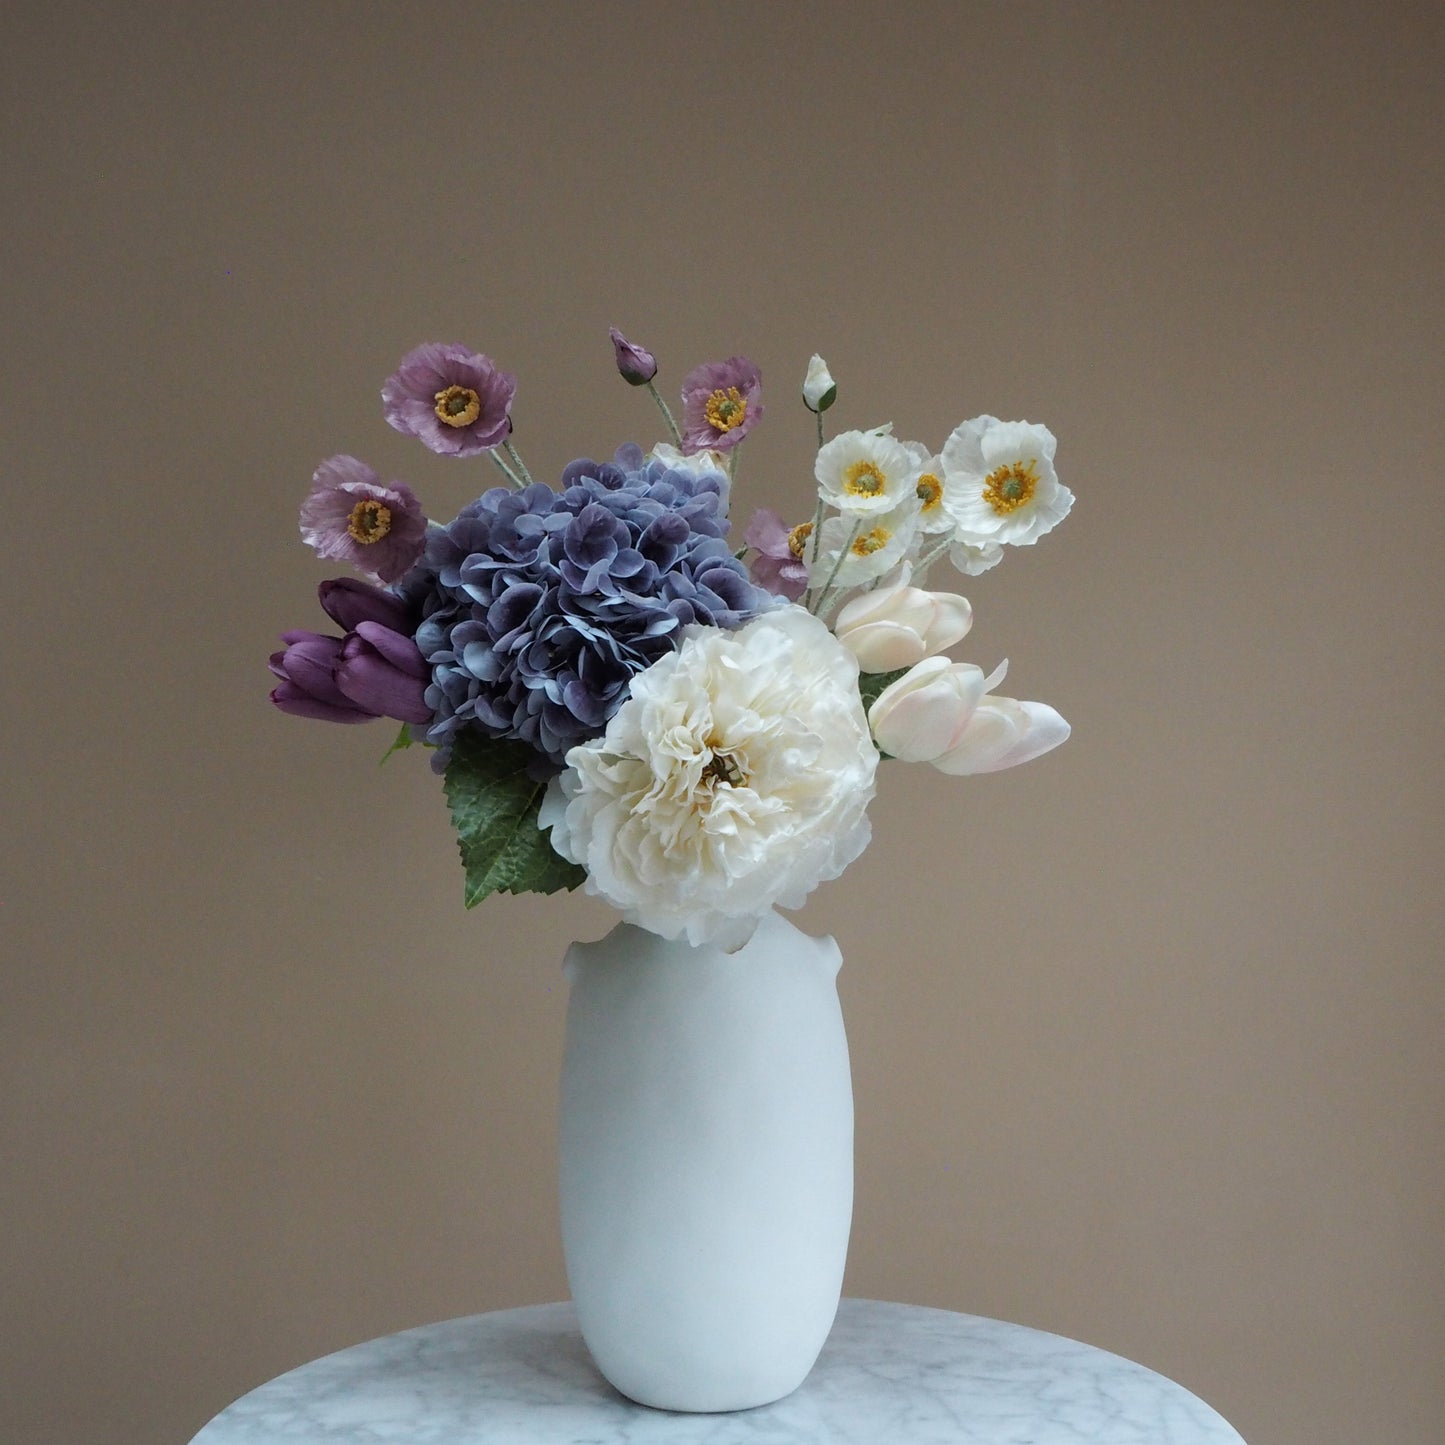 Roman Vase - Ceramic White